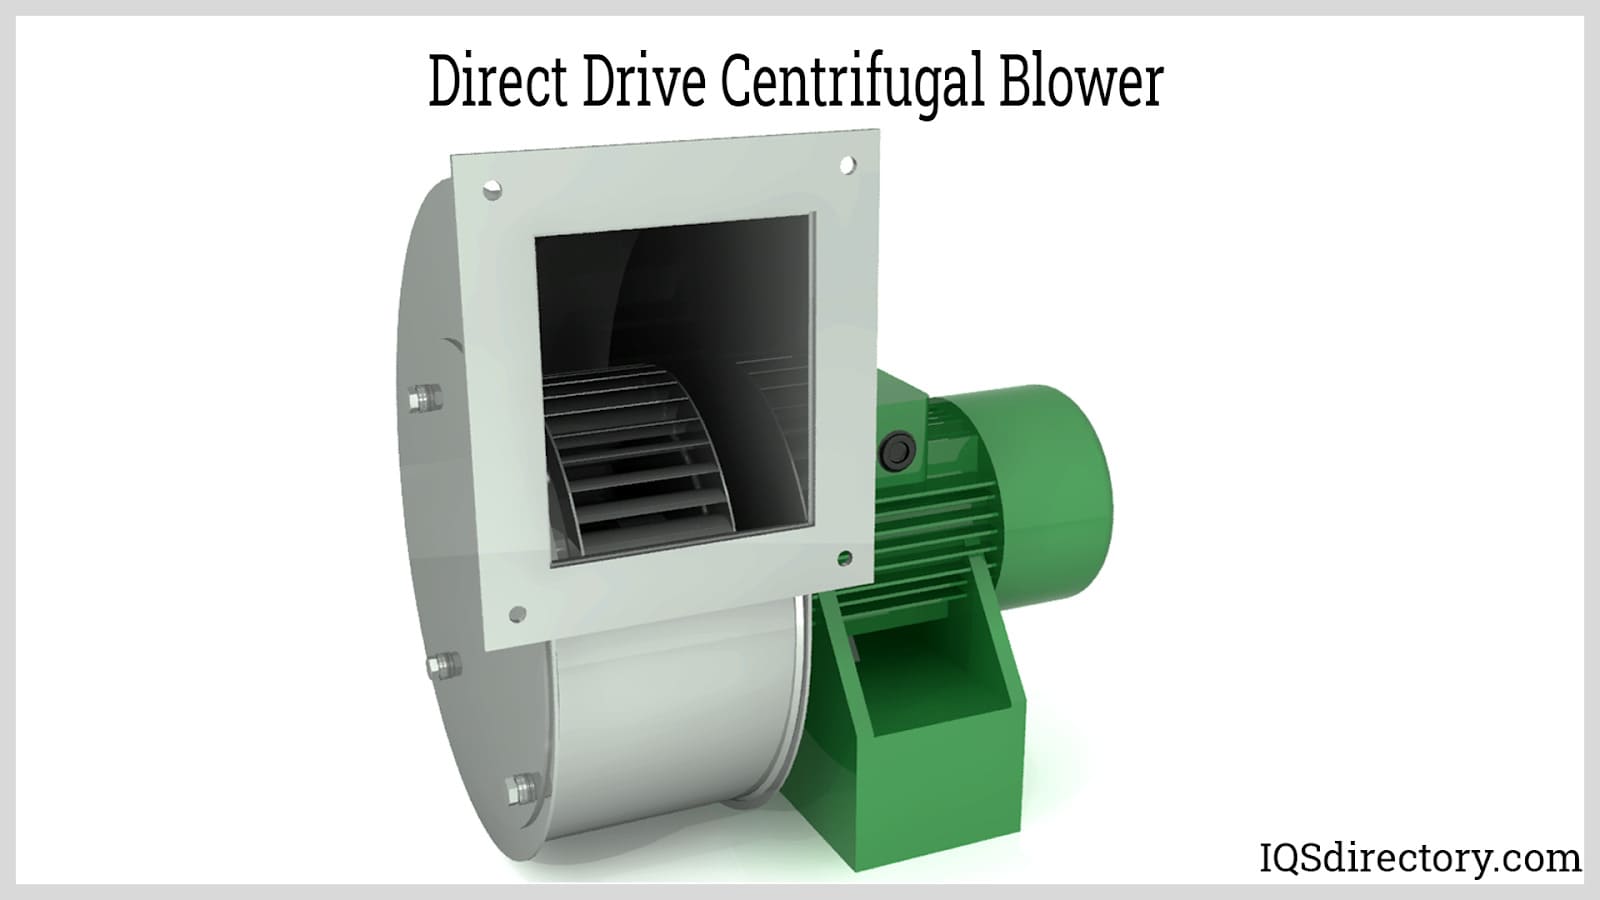 Direct Drive Centrifugal Blower